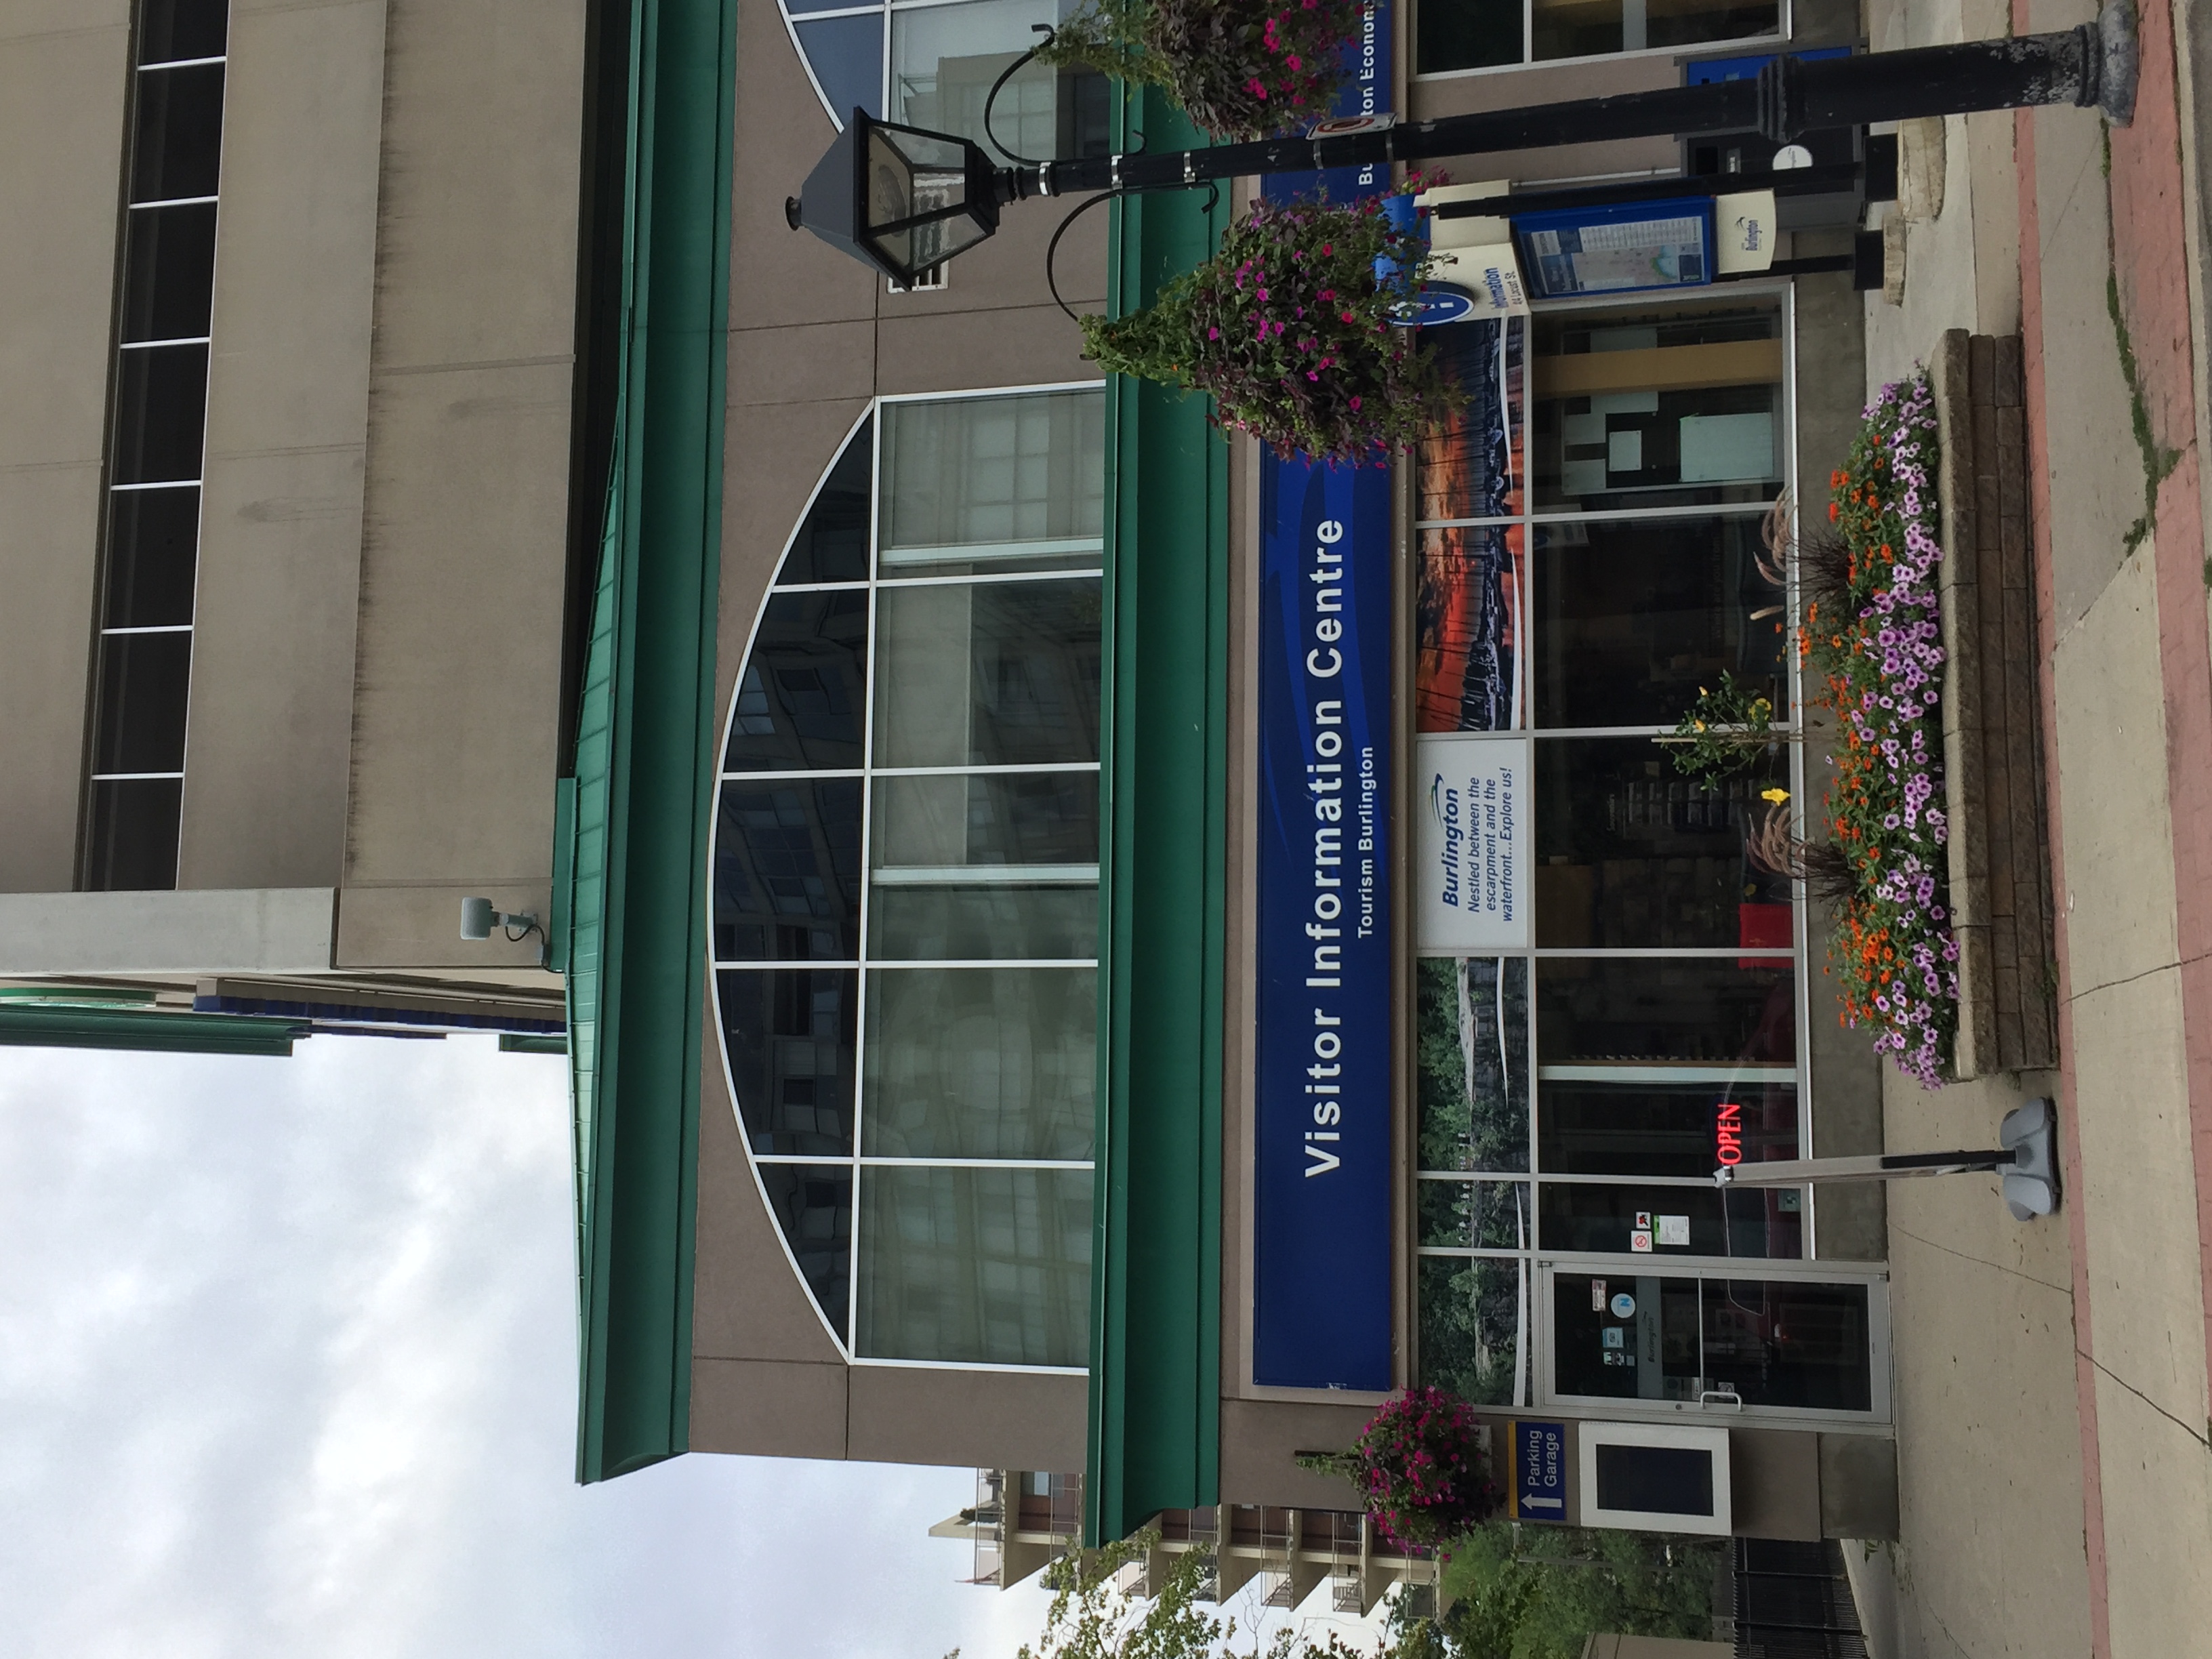 burlington tourist information centre